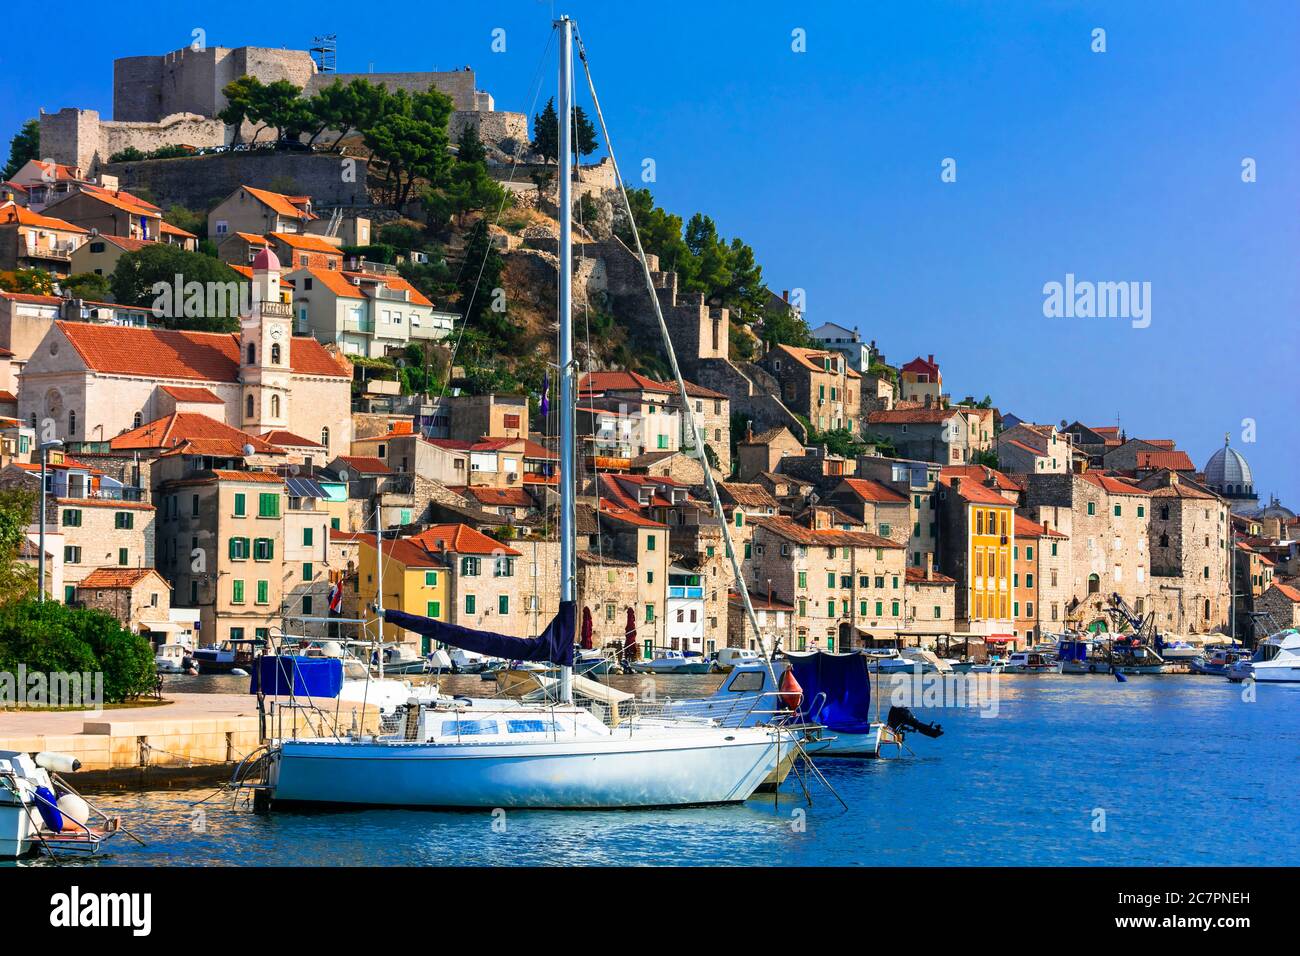 Schöne Orte in Kroatien - magnifiicent mittelalterliche Stadt Sibenik in der Adriaküste Stockfoto